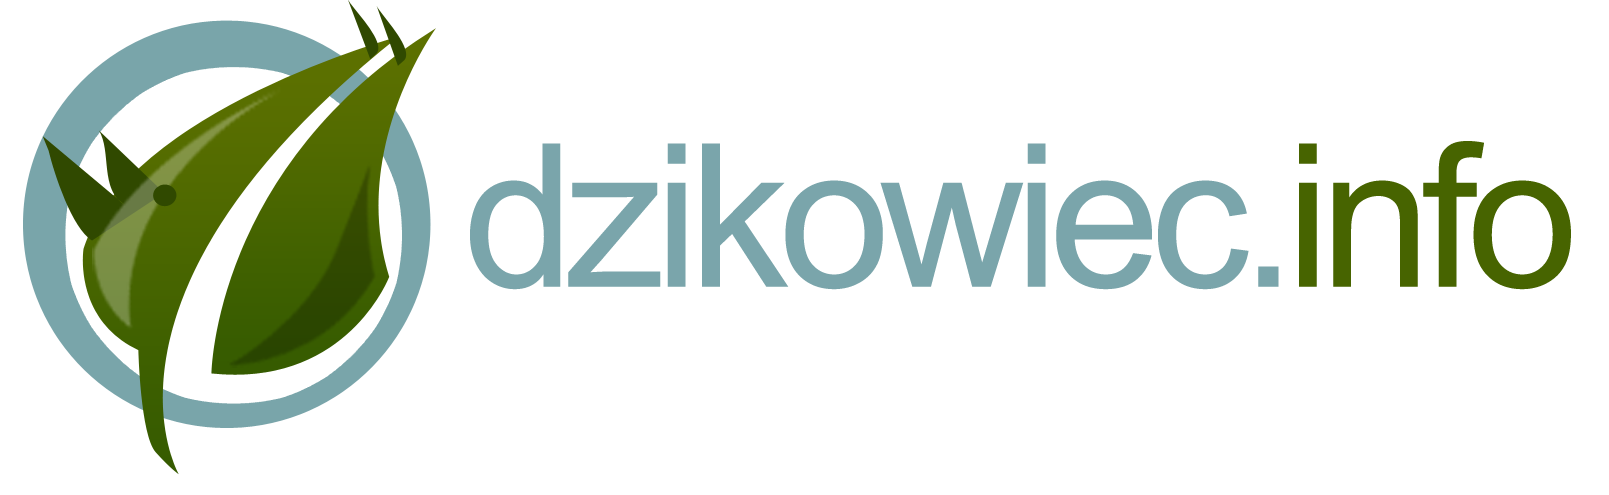 Logo dzikowiec.info